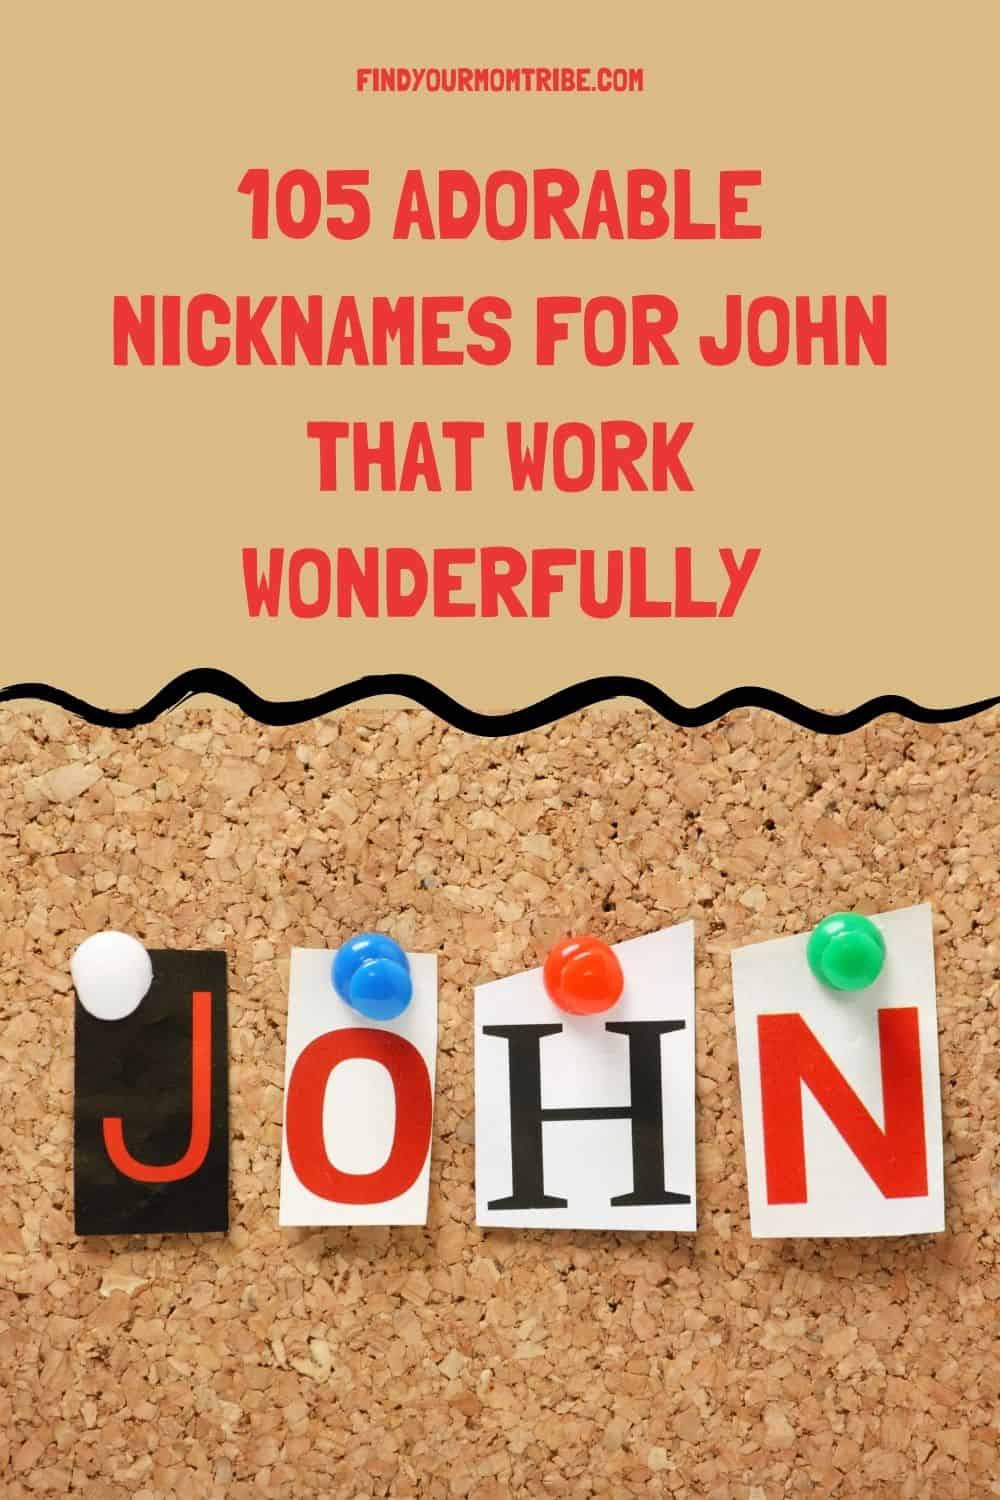 Pinterest nicknames for john 